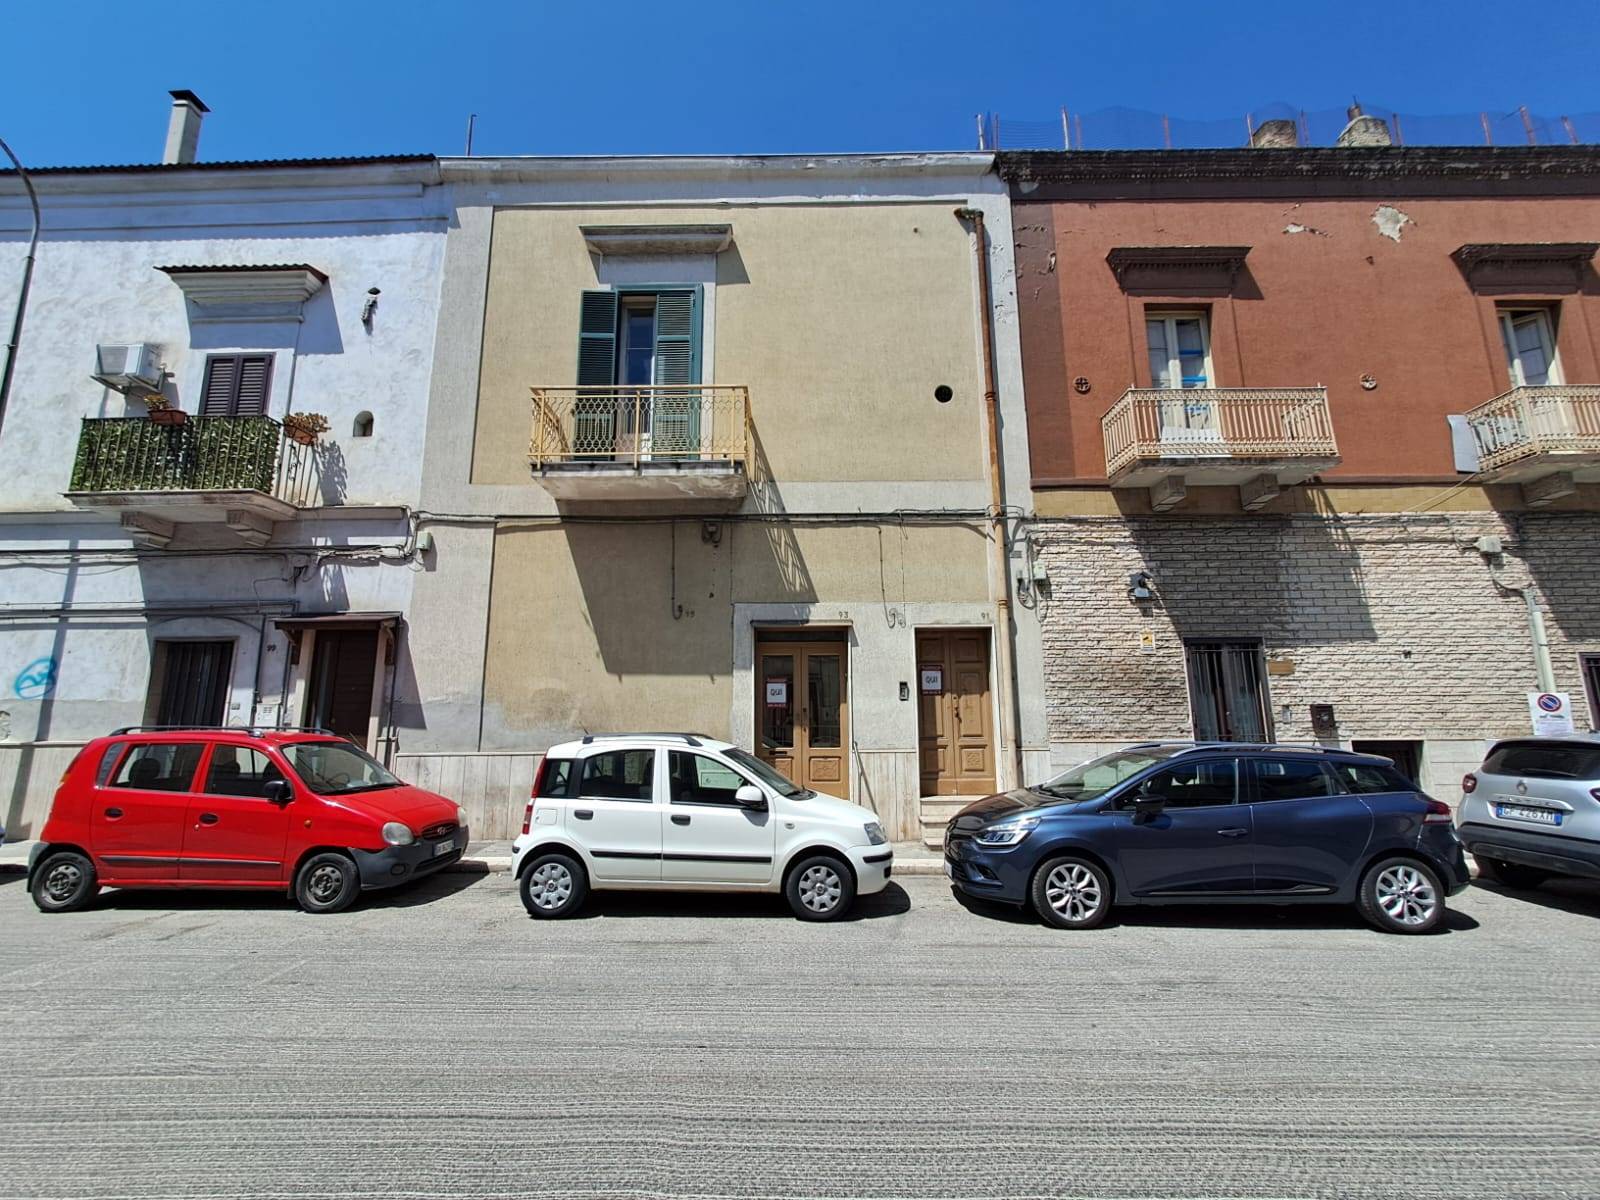 Casa singola in Via Umberto i in zona Ceglie del Campo a Bari